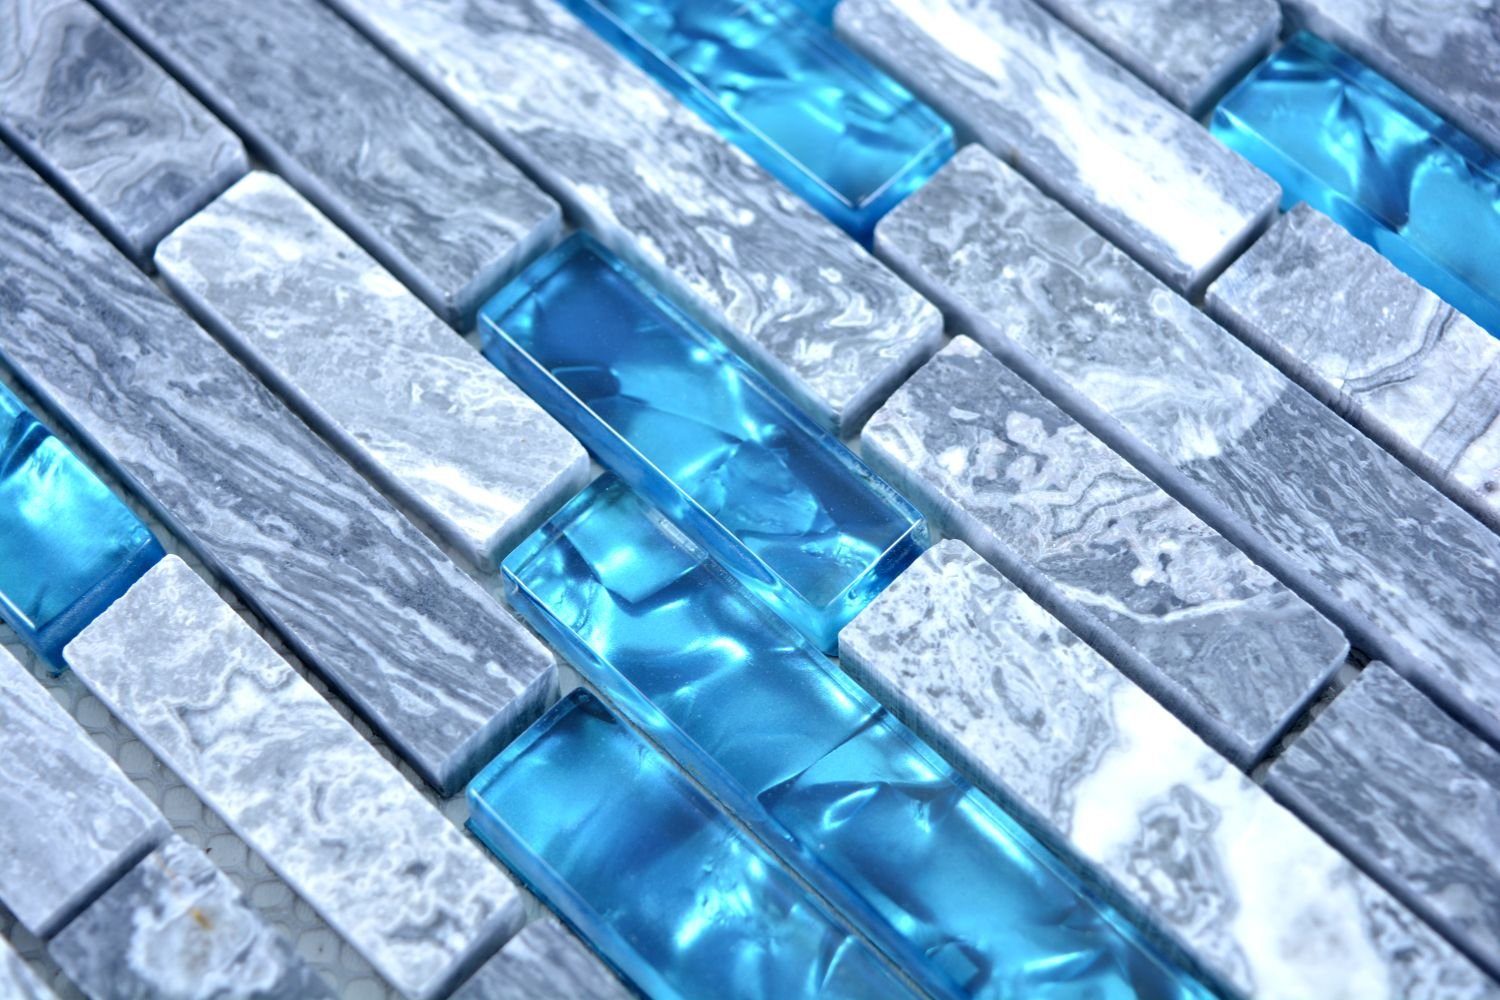 Mosani Wandfliese 0,87m² Marmor 10-teillig, Blau, Fliesen Glasmosik Mosaikfliesen Naturstein Grau Set, Dekorative Wandverkleidung